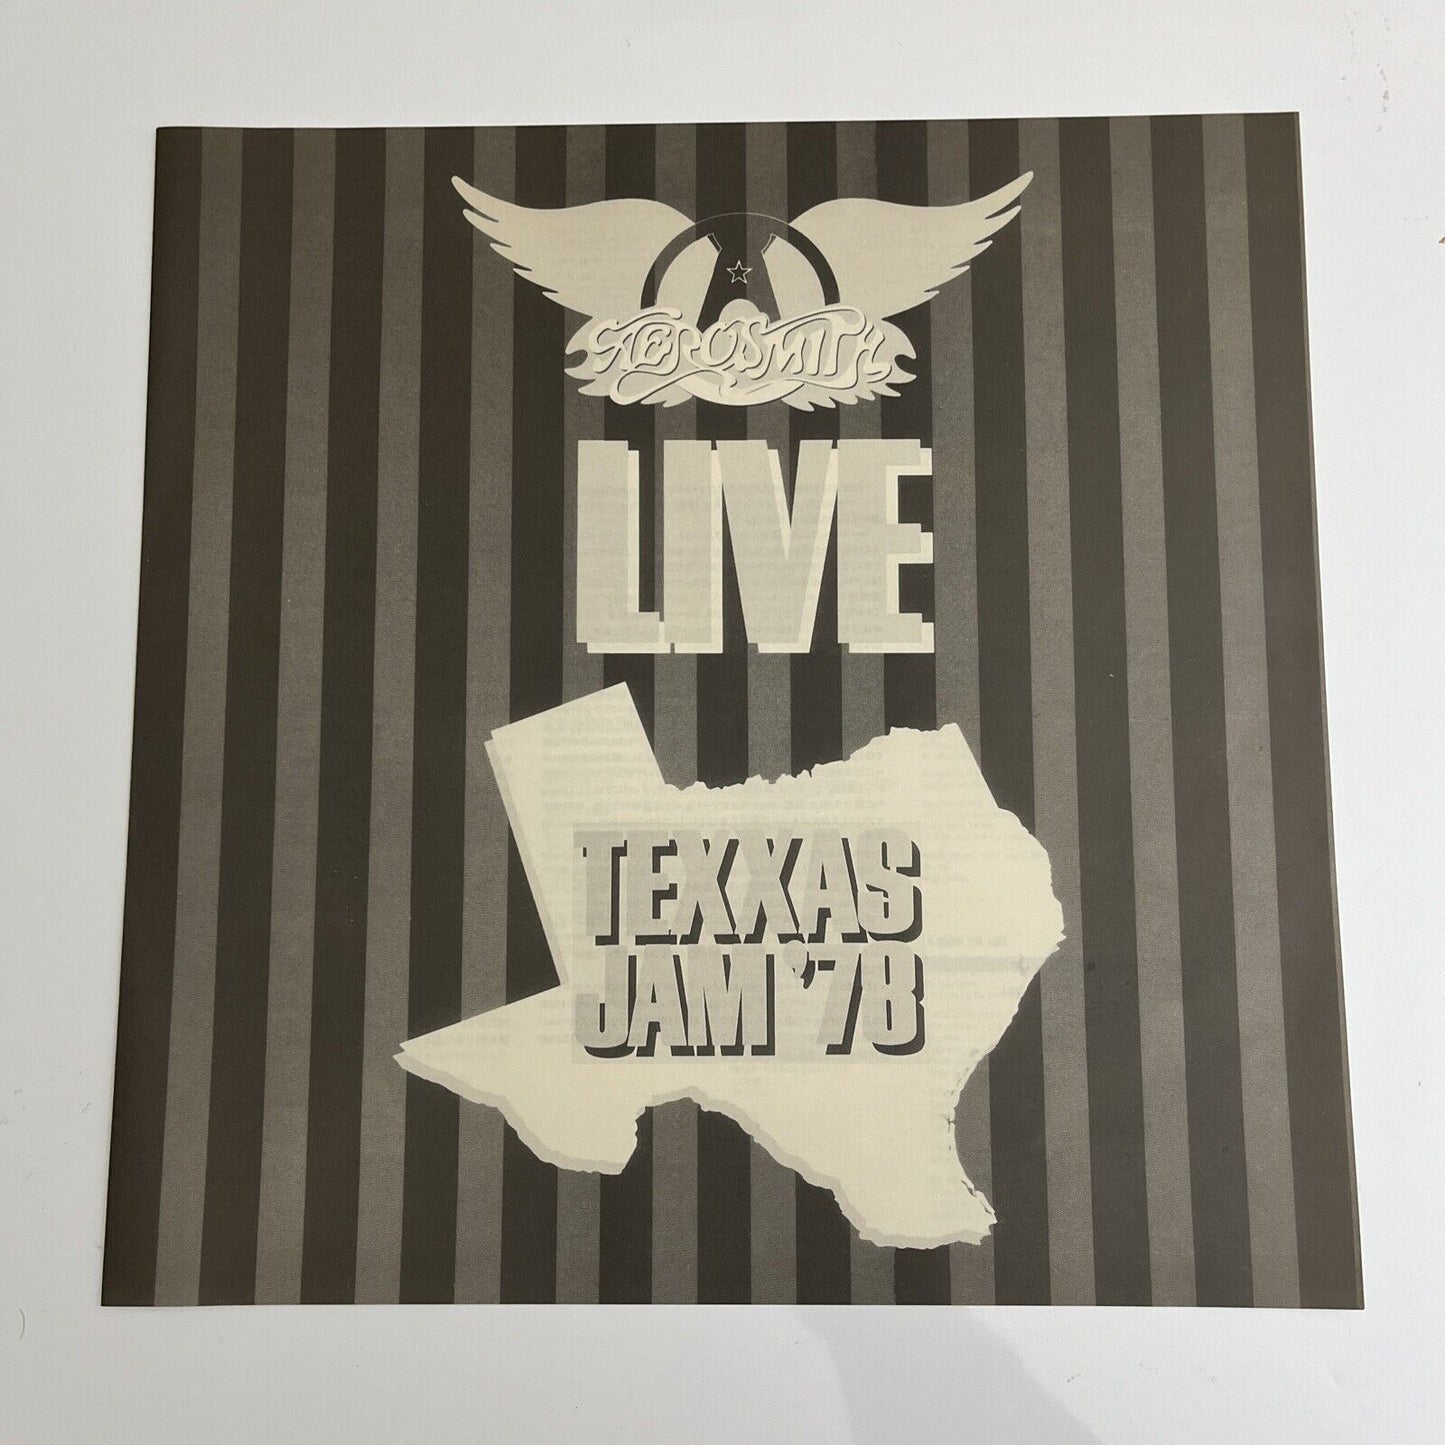 Aerosmith Live Texxas Jam '78 (1978) Laserdisc LD NTSC